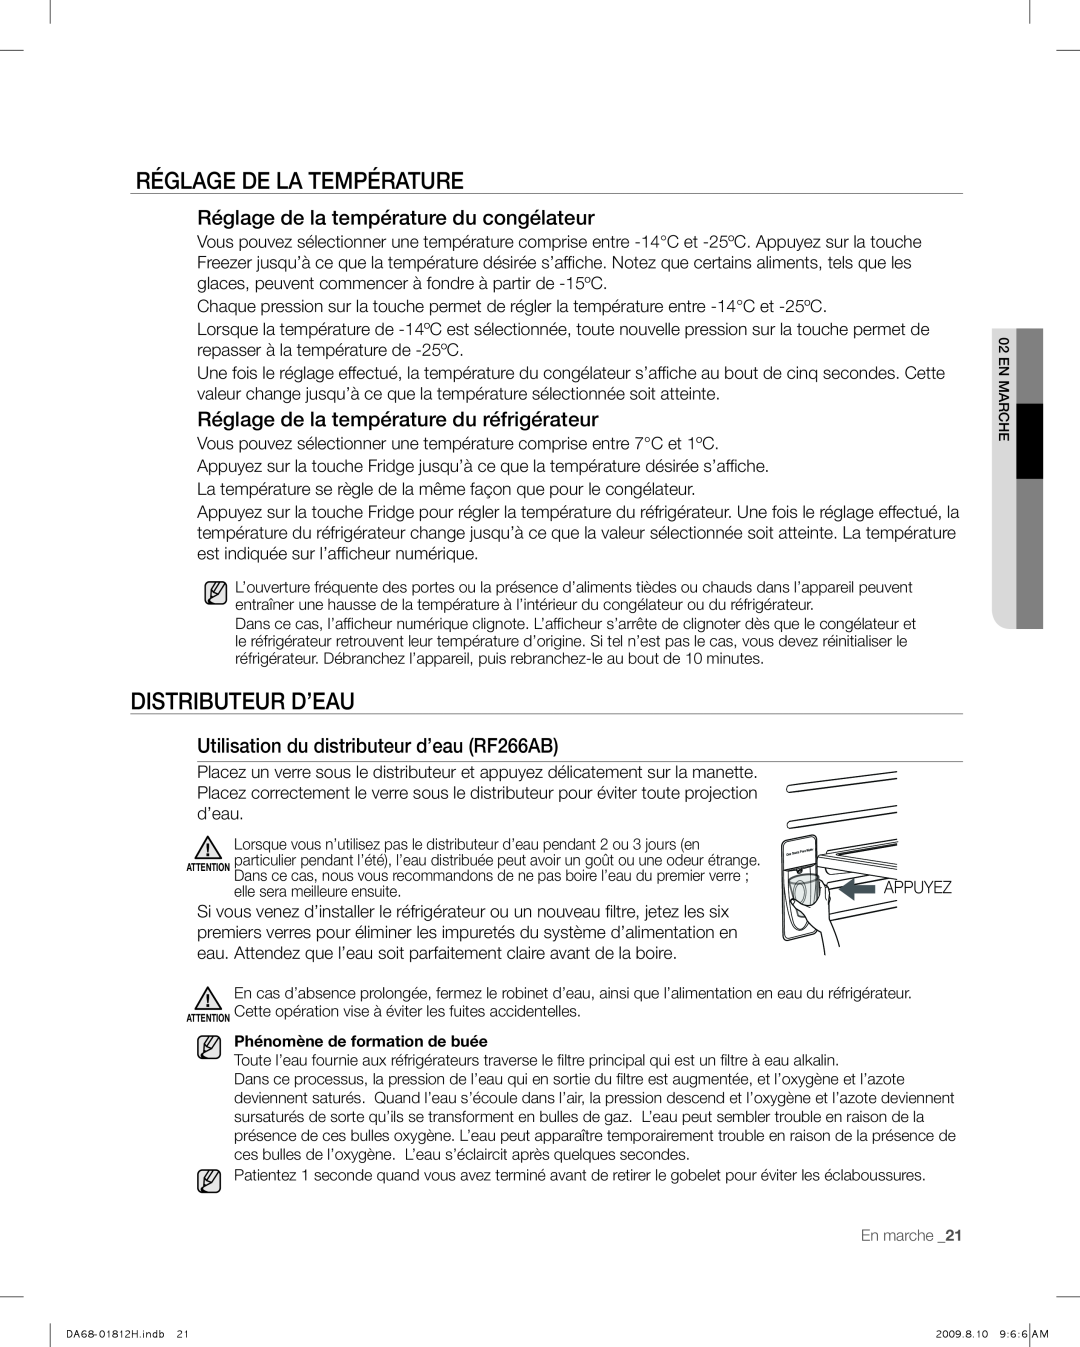 Samsung RF263 user manual Réglage De La Température, Distributeur D’Eau, Réglage de la température du congélateur 